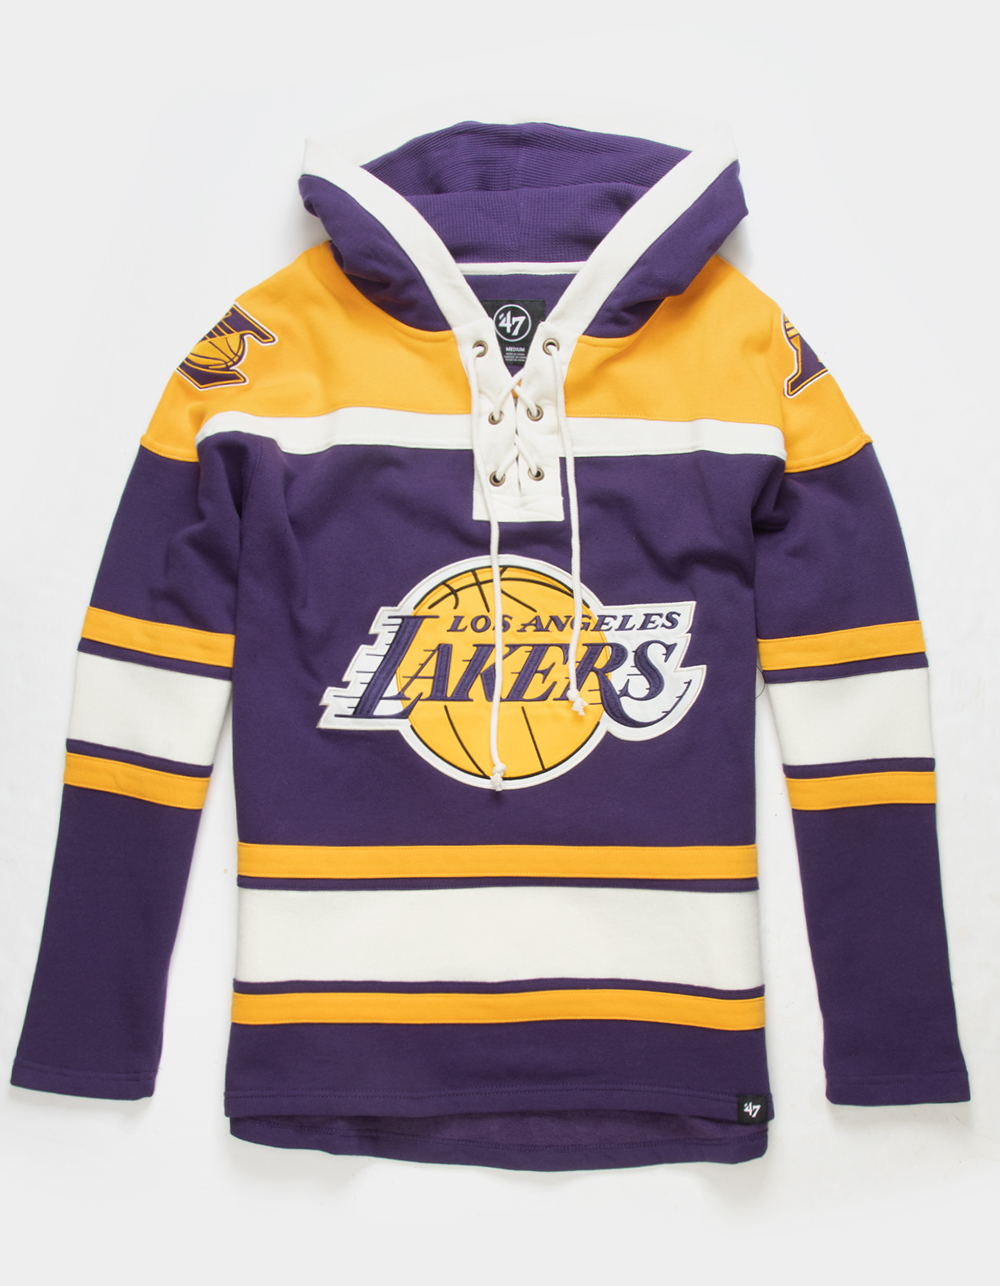 Black hoodie Bulls and Lakers purple trendy hoodie for men